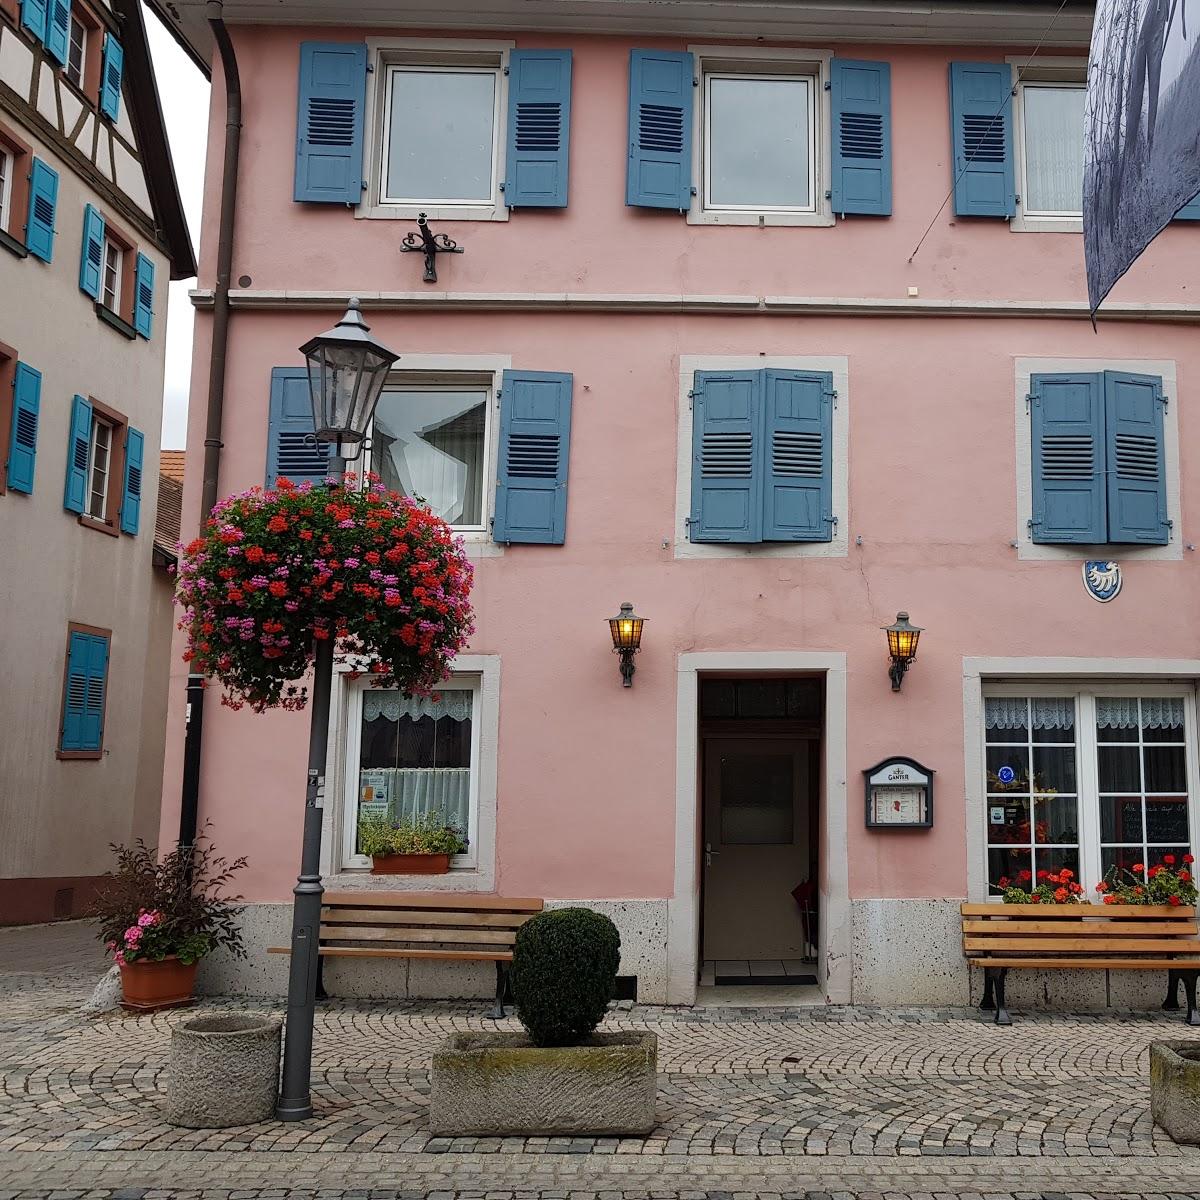 Restaurant "Pfarrwirtschaft" in  Kaiserstuhl